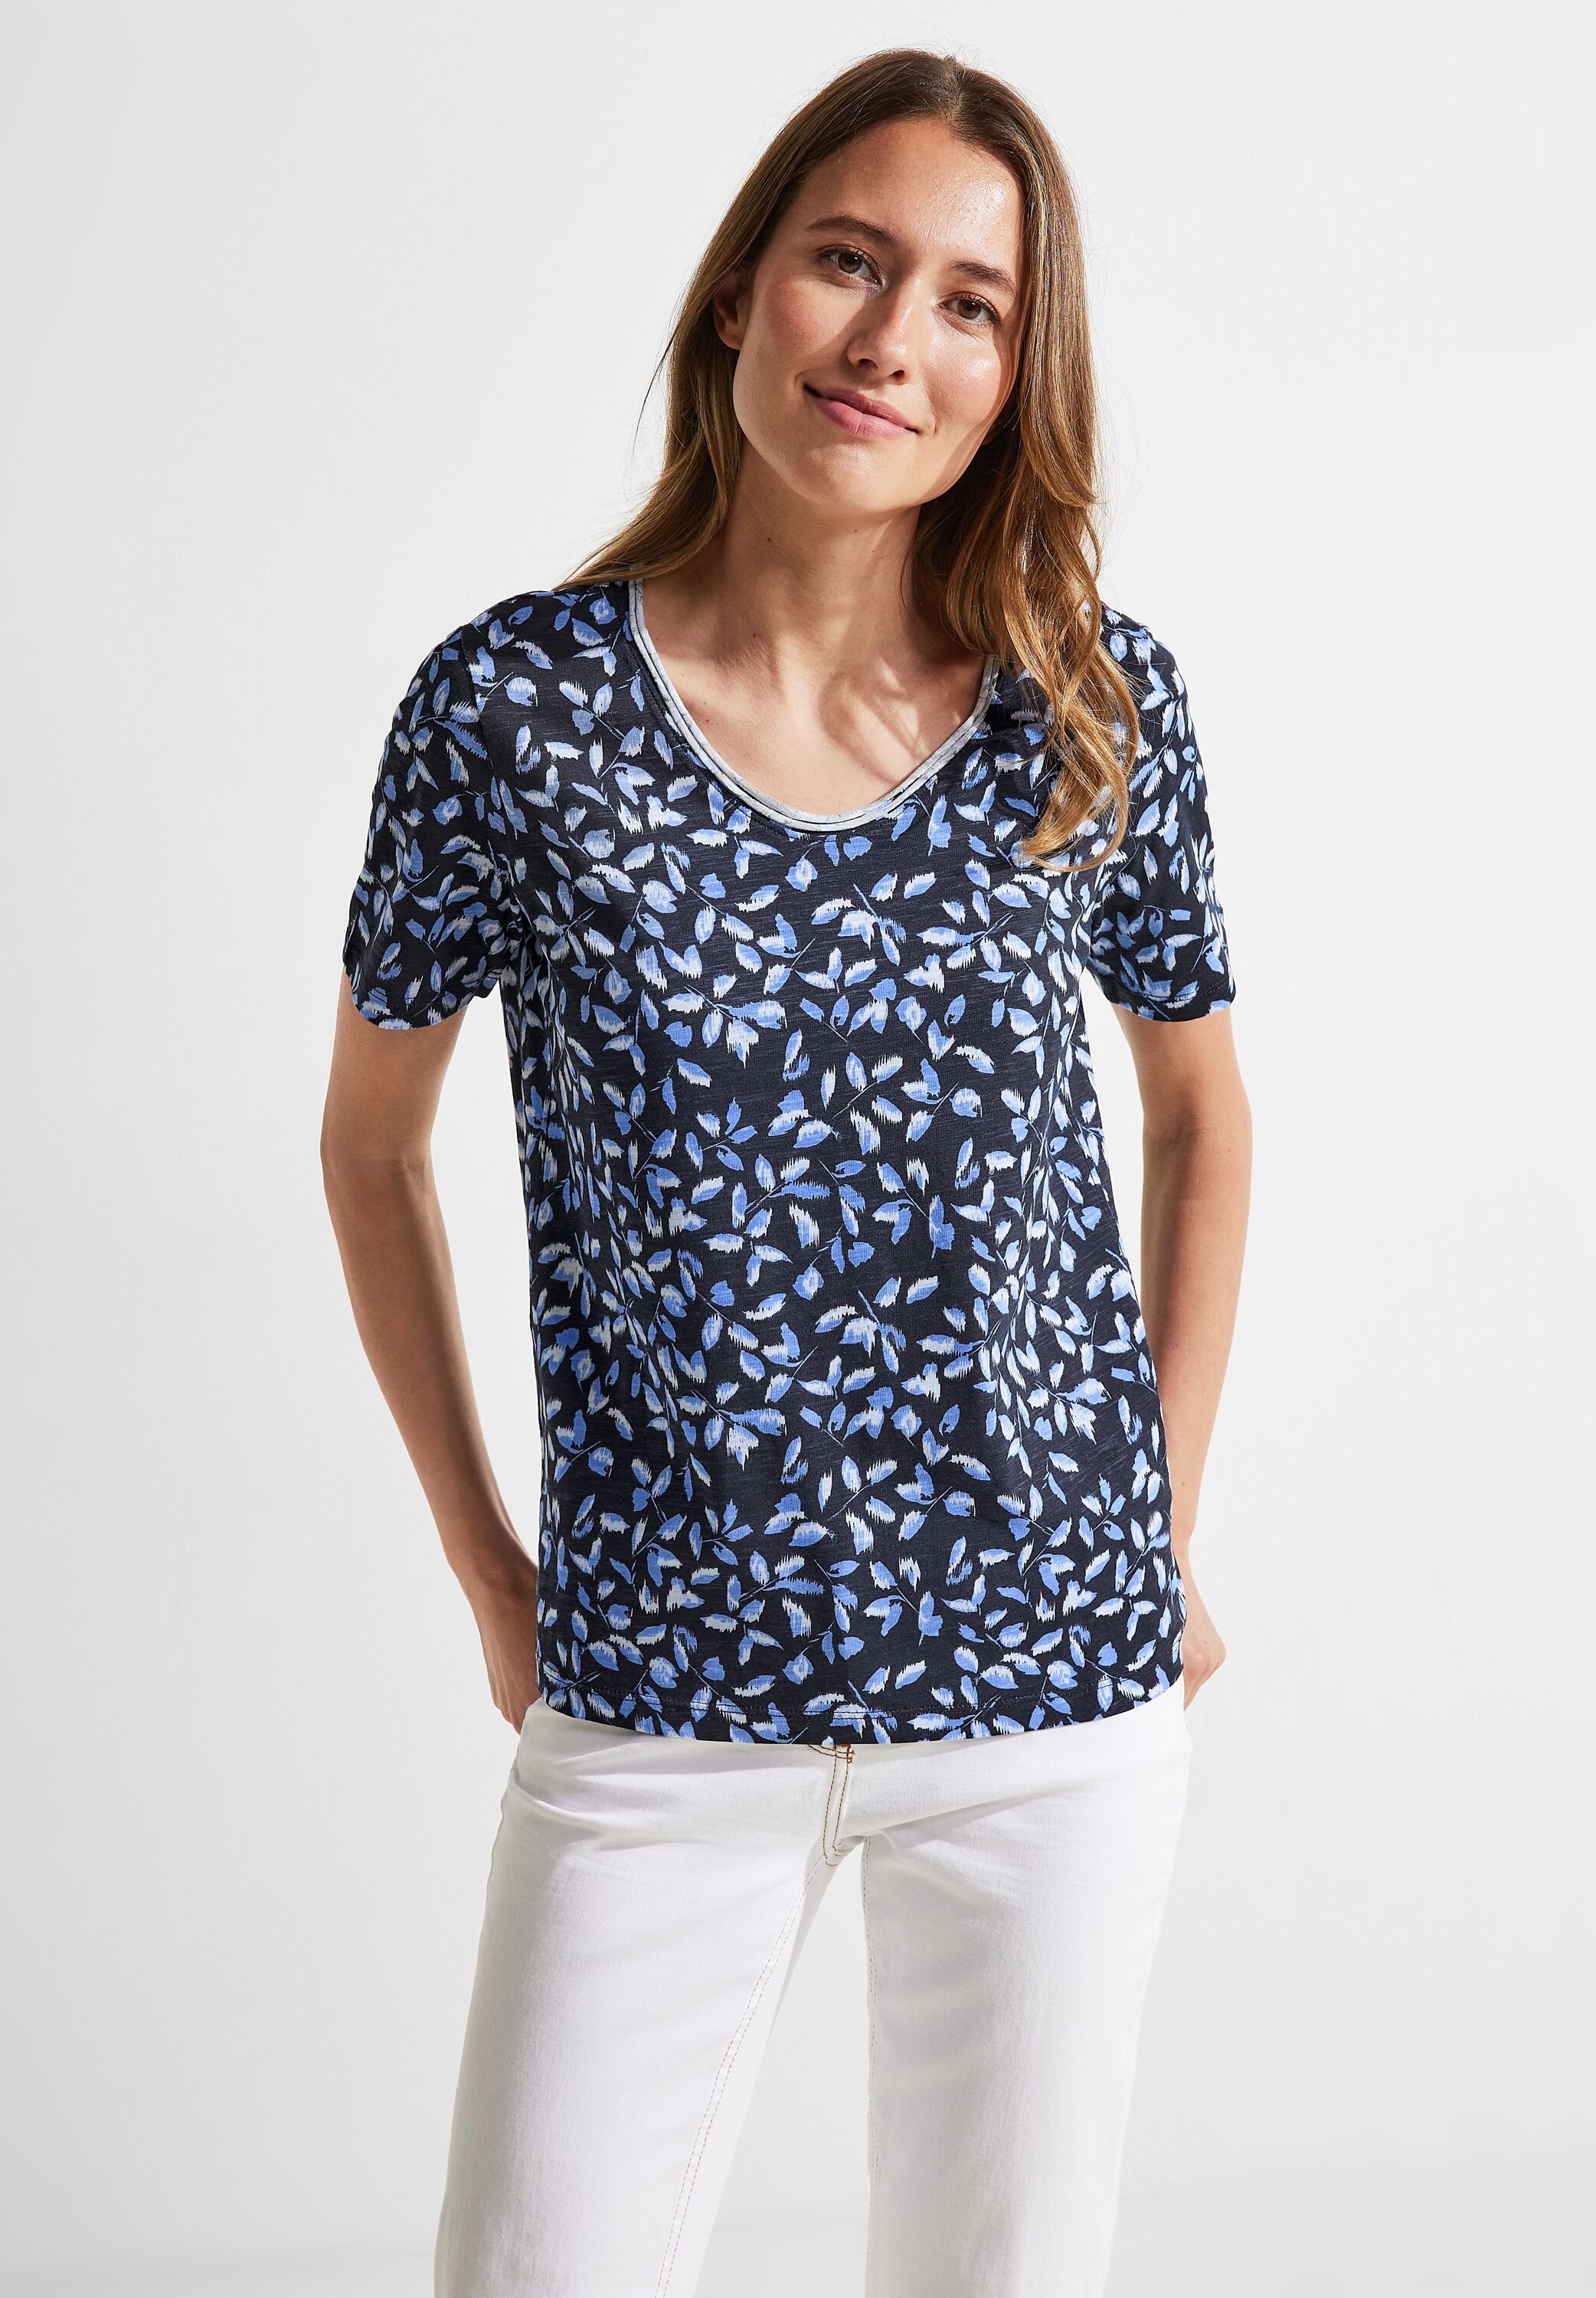 online | » Blumenshirts für Shirts OTTO Damen kaufen Geblümte